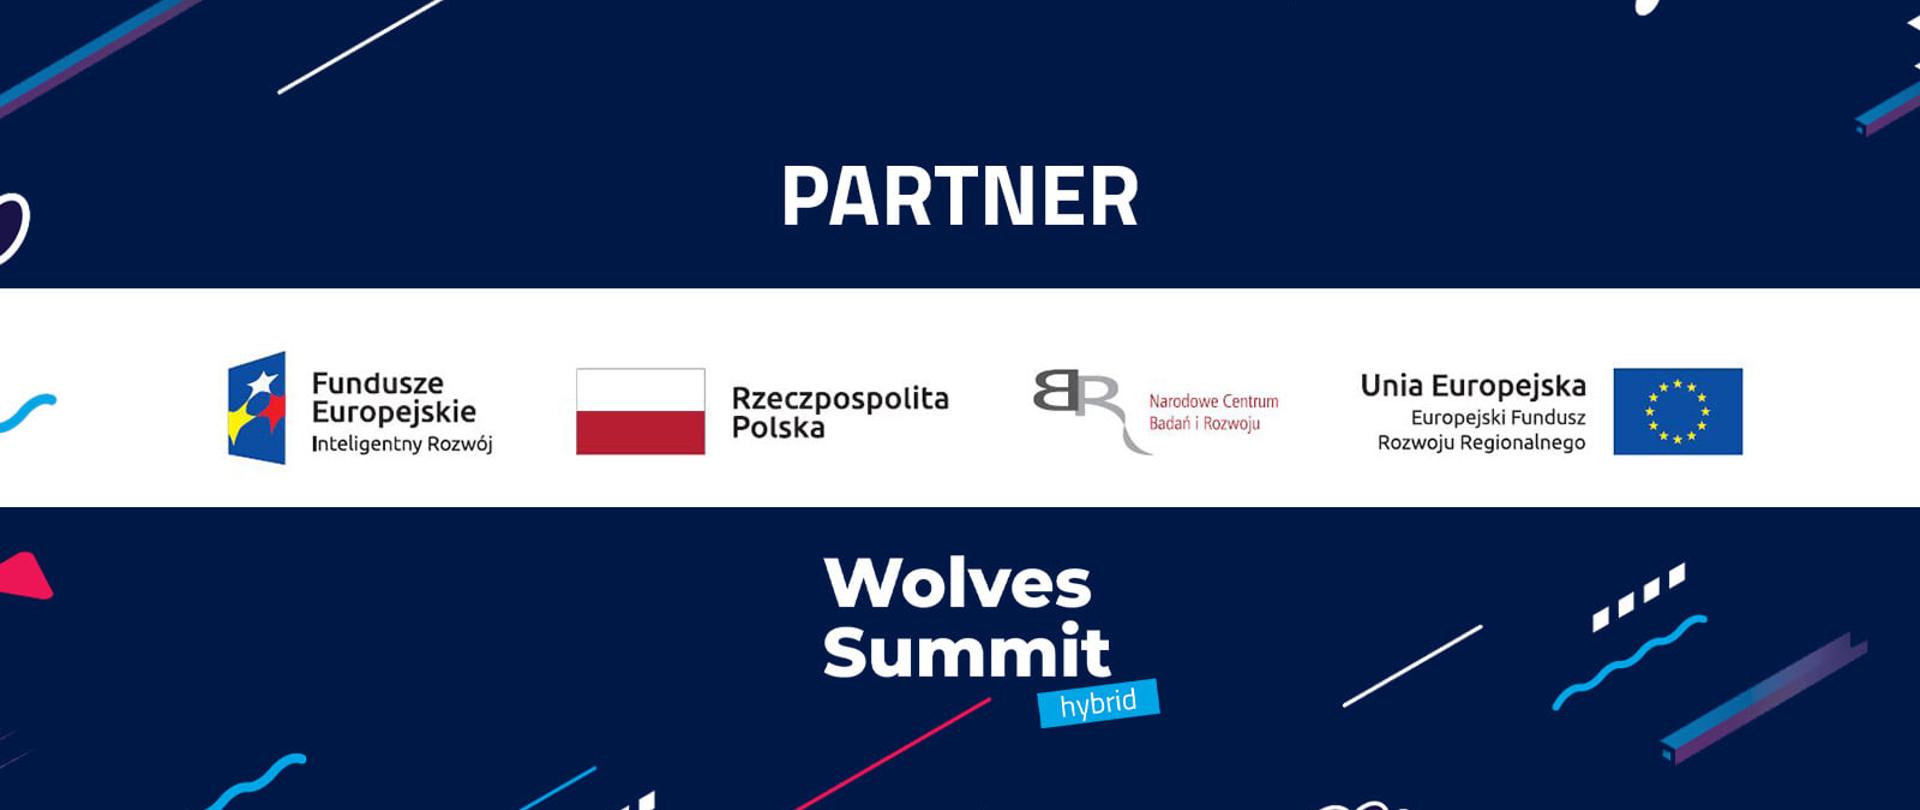 Grafika z napisem Partner: pod spodem ciąg logotypów: Fundusze Europejskie Inteligentny Rozwój, Rzeczpospolita Polska, NCBR, Unia Europejska Europejski Fundusz Rozwoju Regionalnego. Pod spodem logotyp wydarzenia Wolves Summit hybrid.